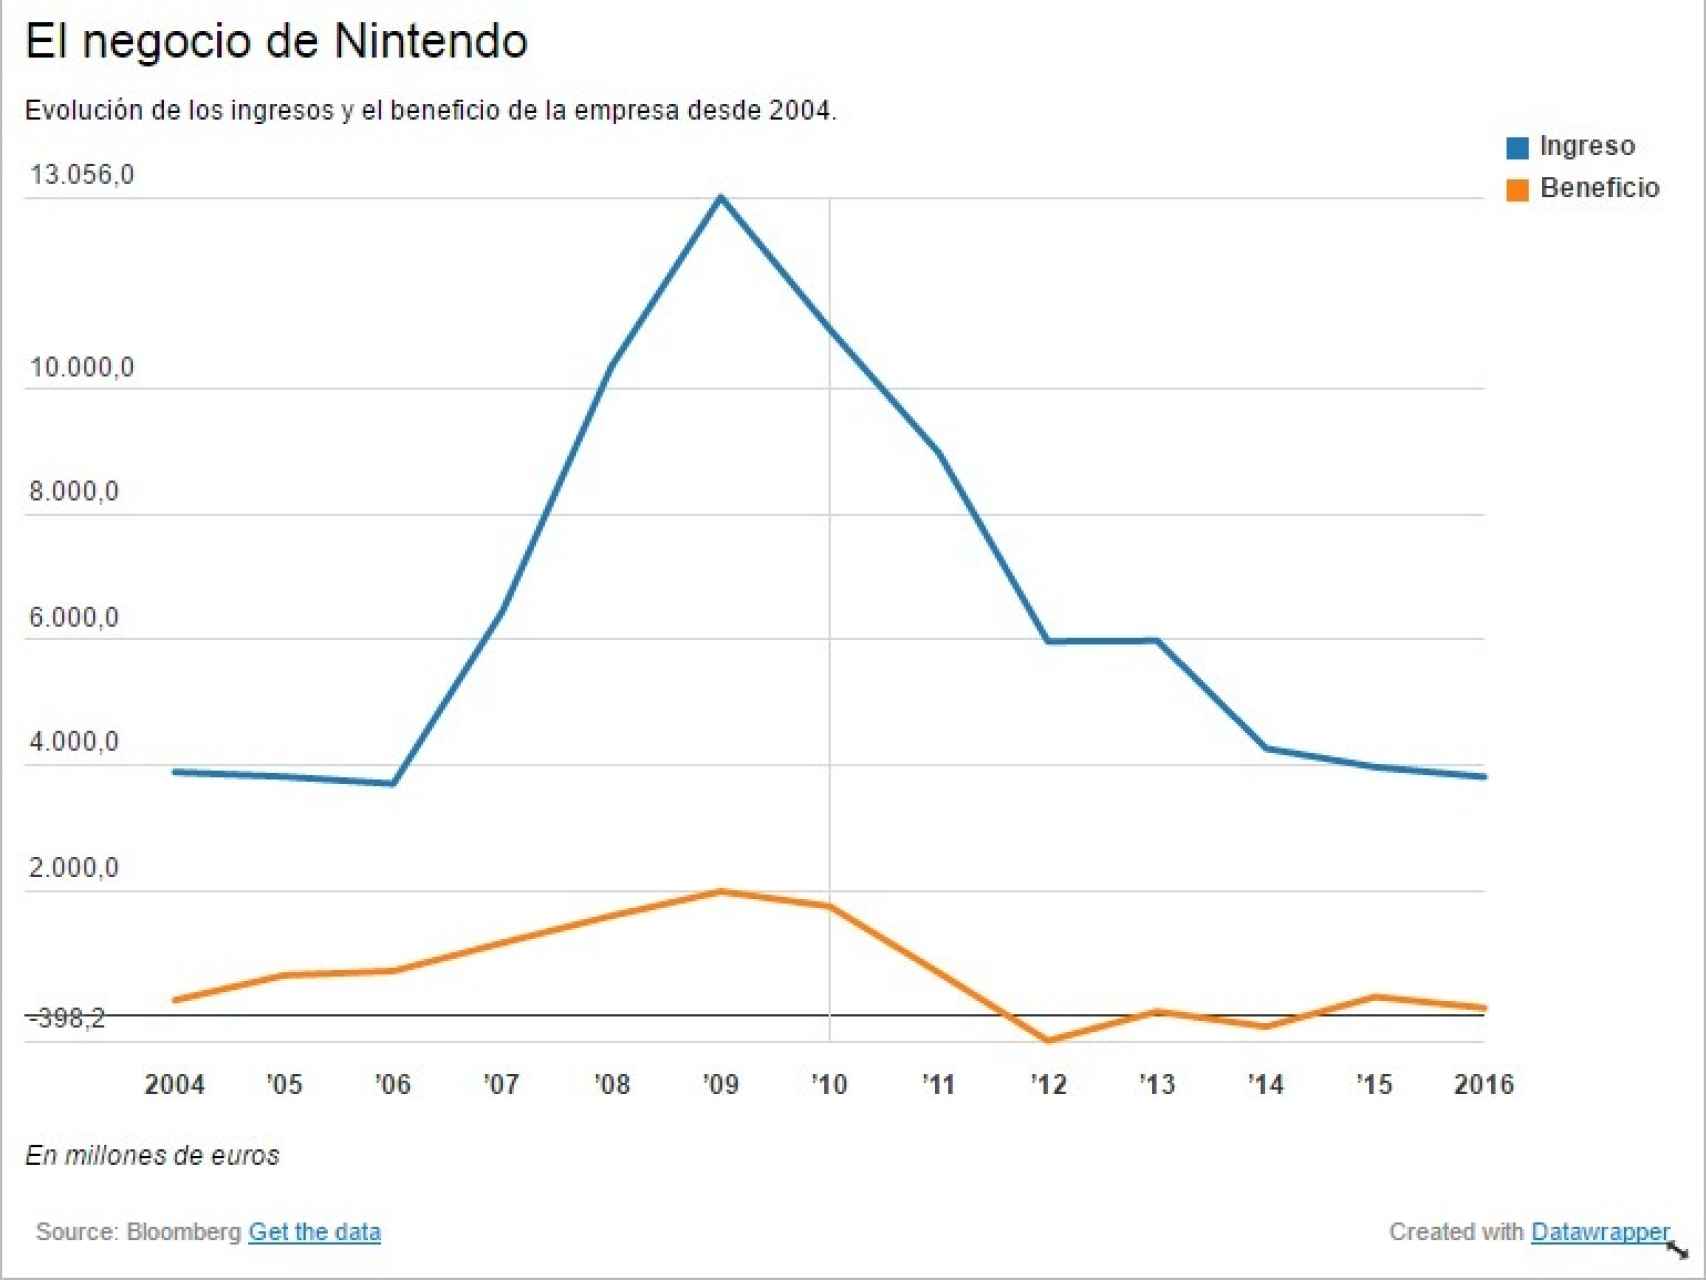 El negocio de Nintendo en los últimos años.